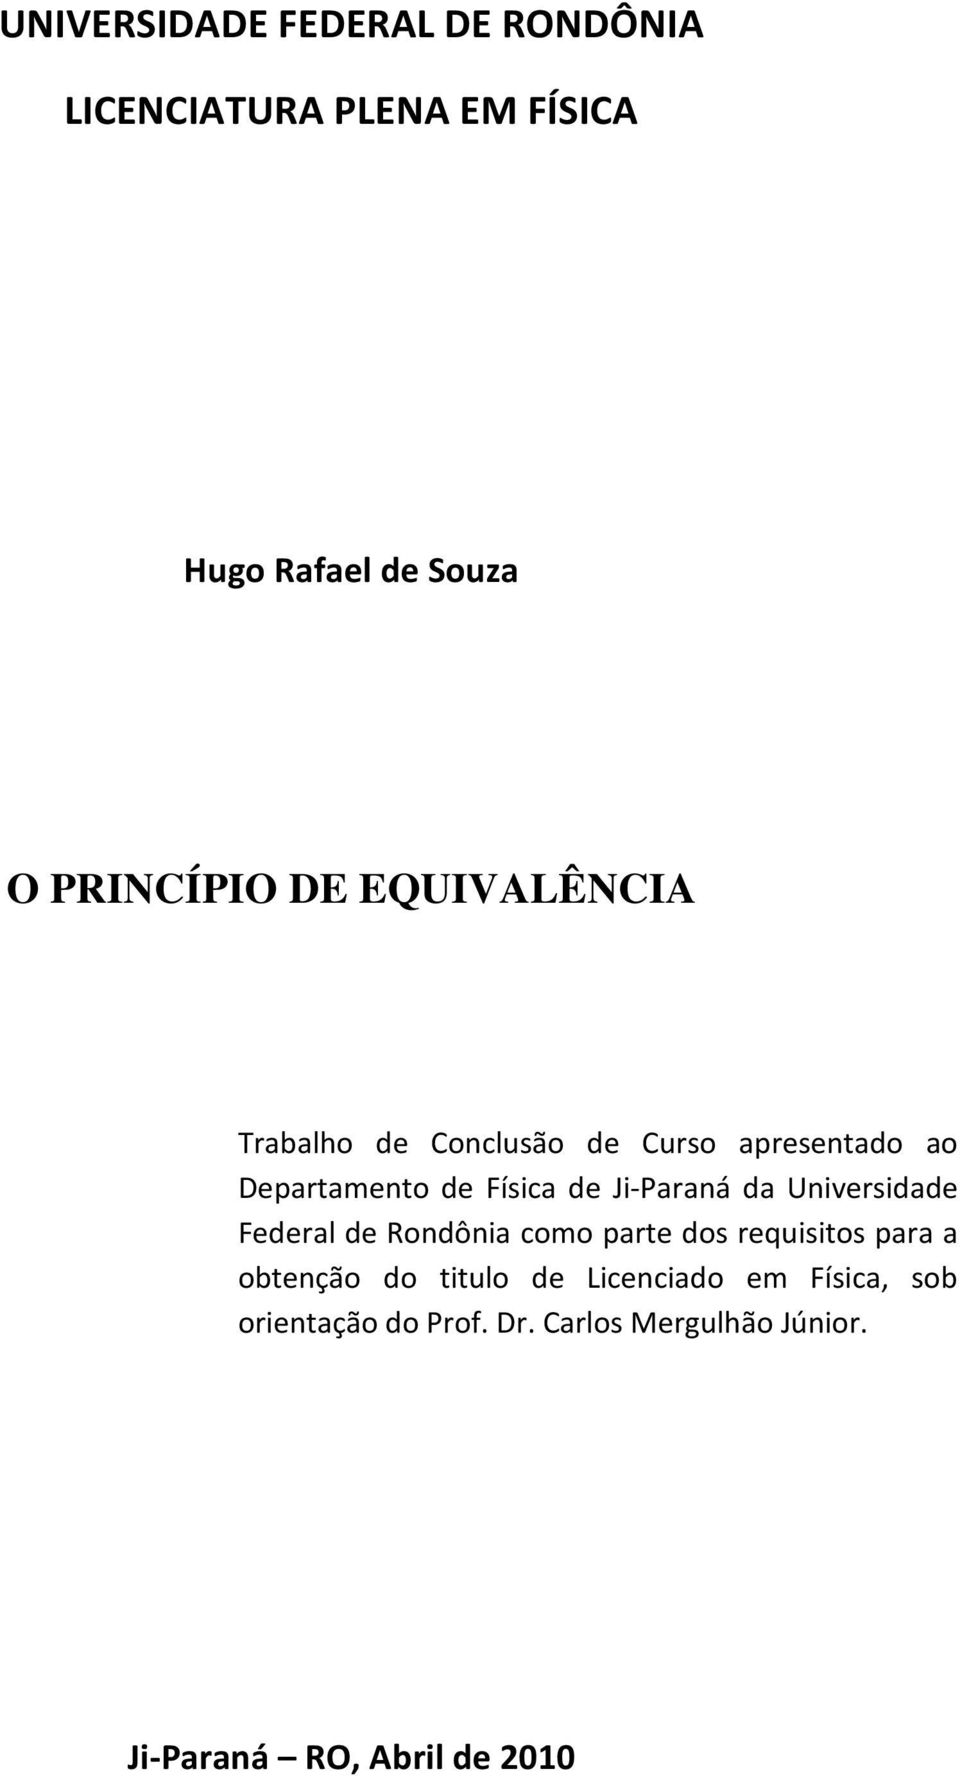 Ji-Paraná da Universidade Federal de Rondônia como parte dos requisitos para a obtenção do